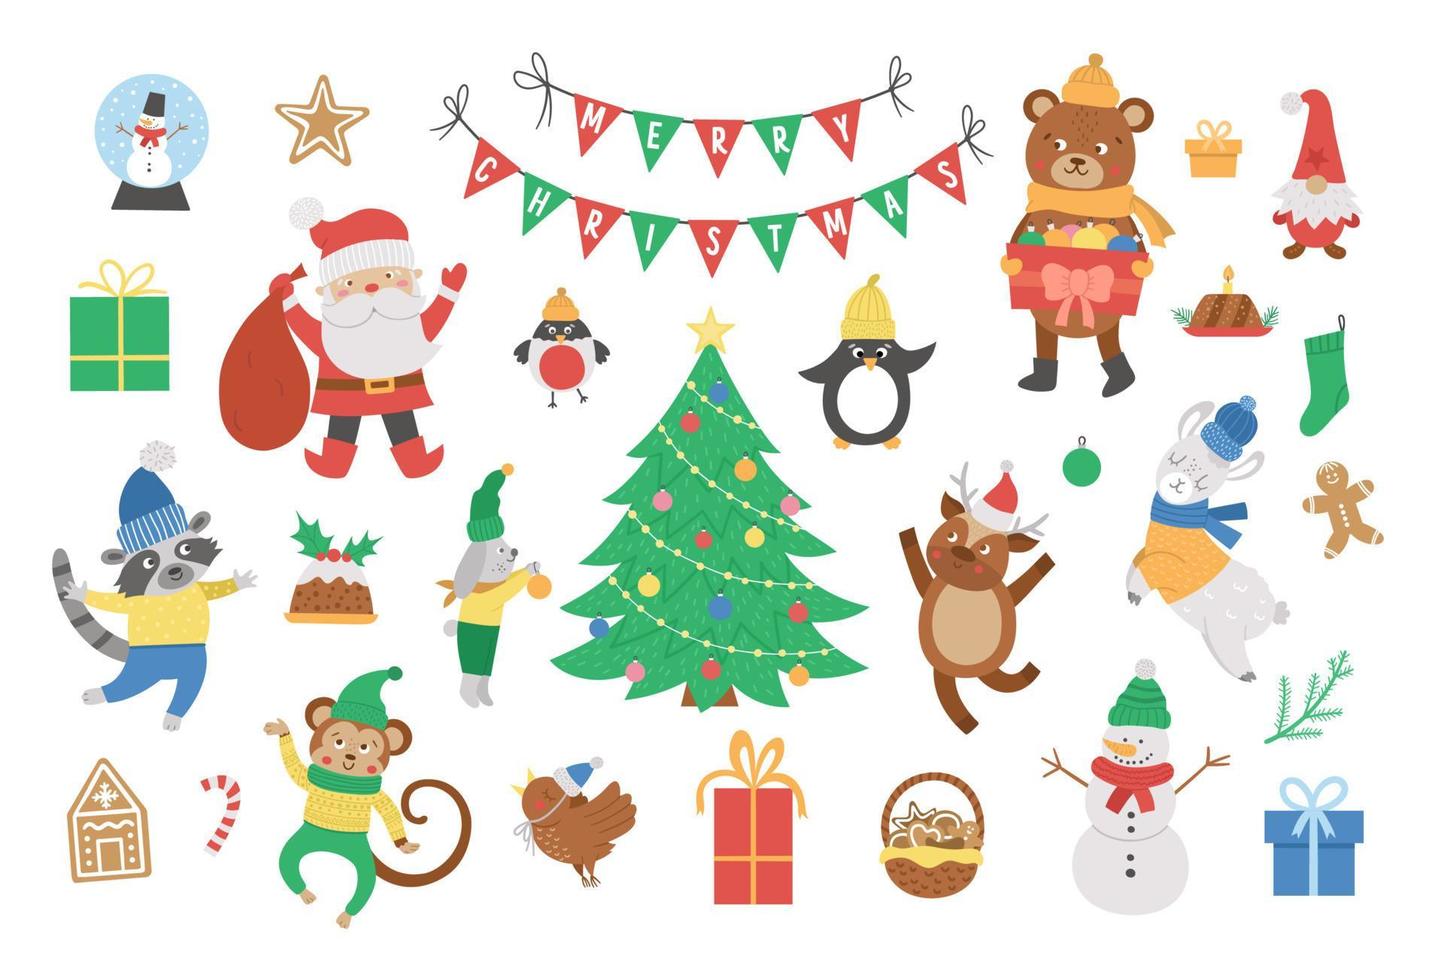 vektor uppsättning julelement med jultomten i röd hatt med säck, rådjur, gran, presenterar isolerad på vit bakgrund. söt rolig platt stil illustration för dekorationer eller nyårsdesign.